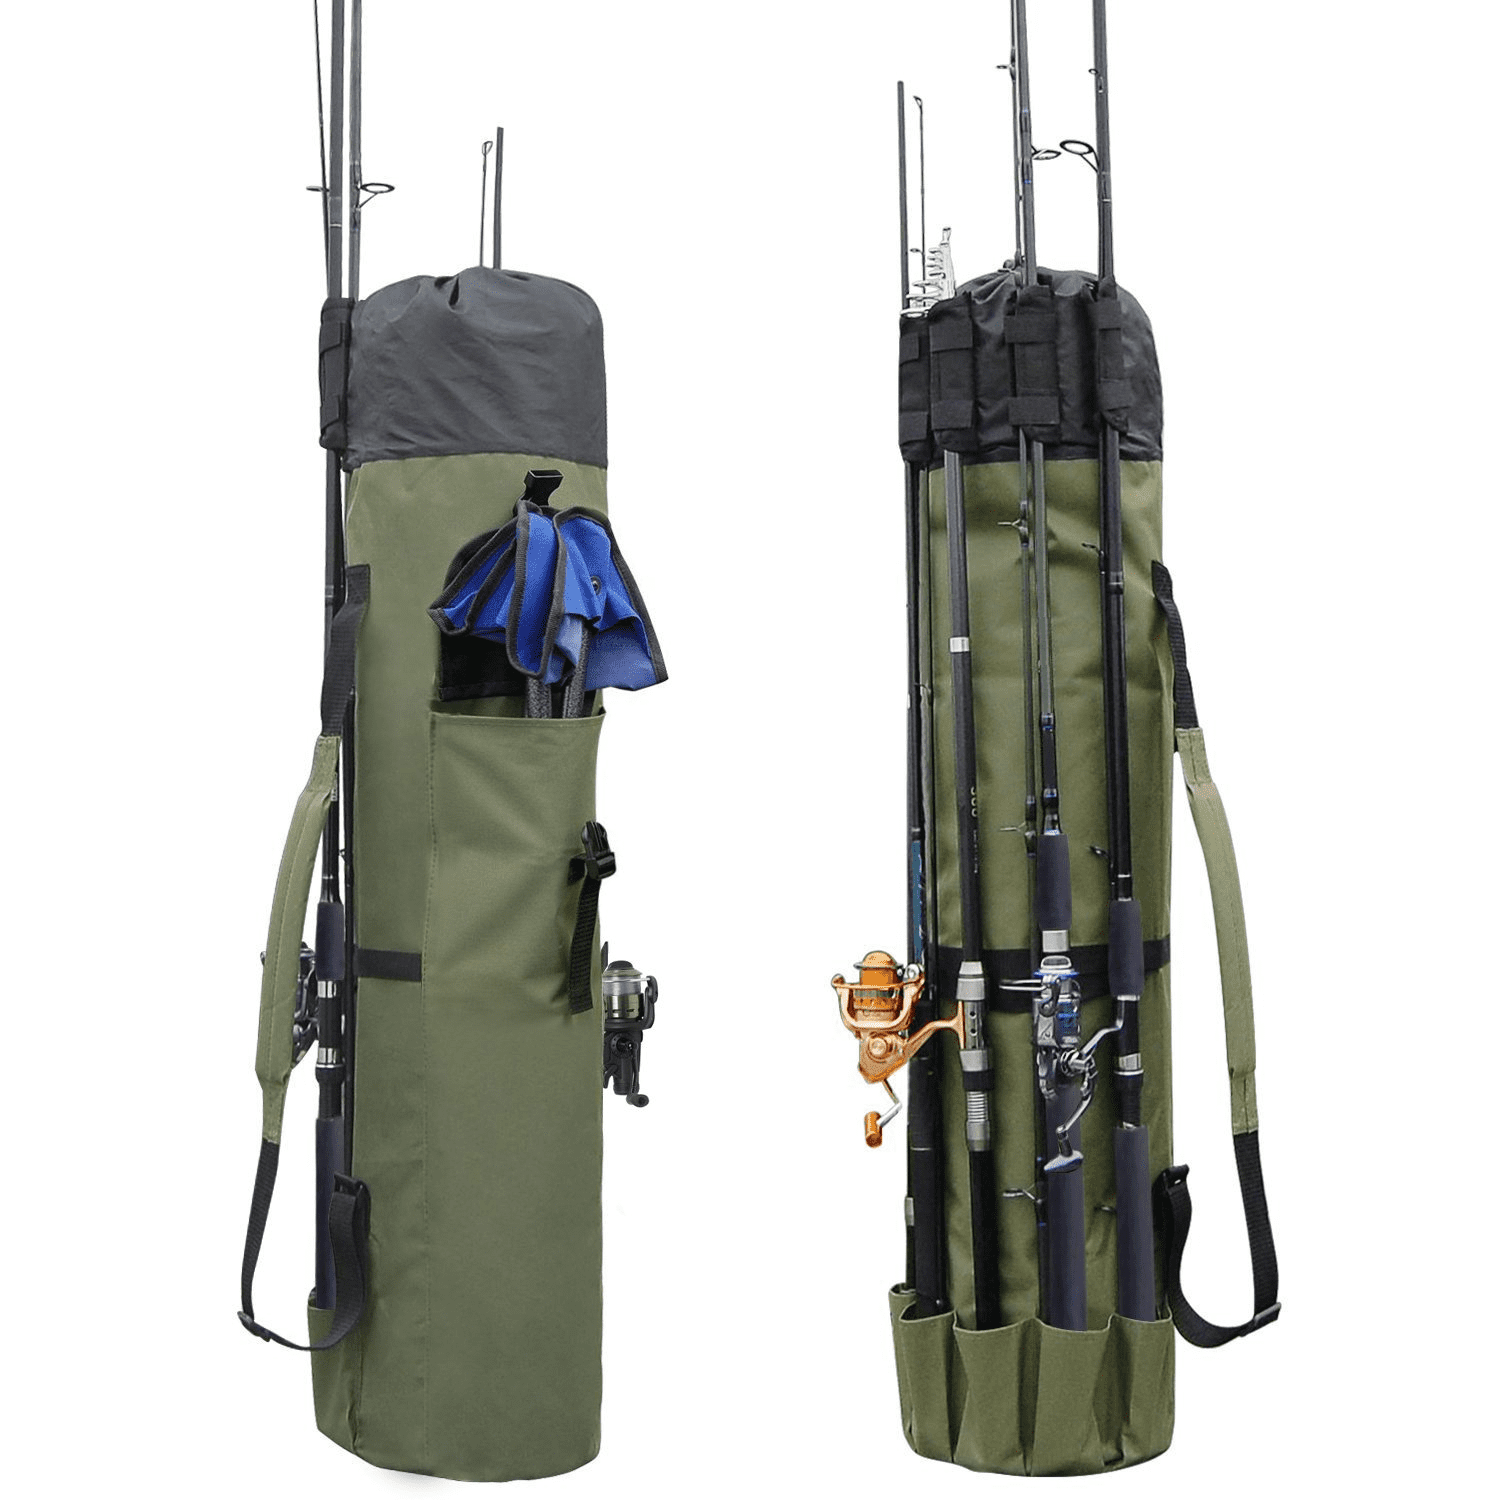 Fly Fishing Rod Tube & Reel Case, Waterproof Fishing Rod Bag Pouch